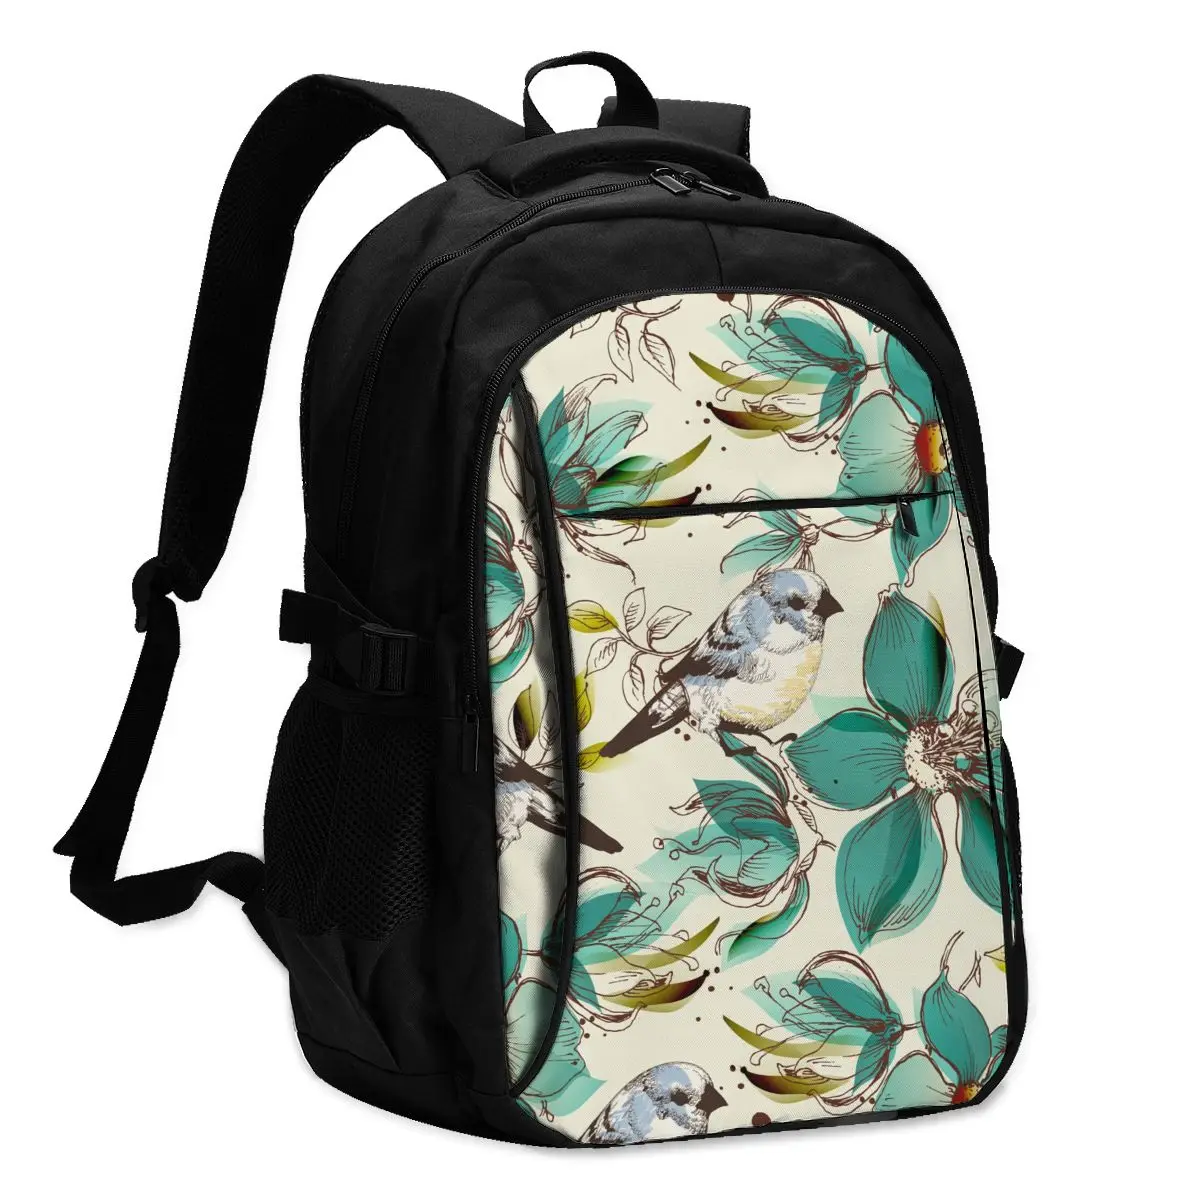 

2021 Прохладный печати ноутбук рюкзак в стиле ретро с цветами и птицами зарядка через USB путешествия Для женщин Мужской школьная сумка Mochila